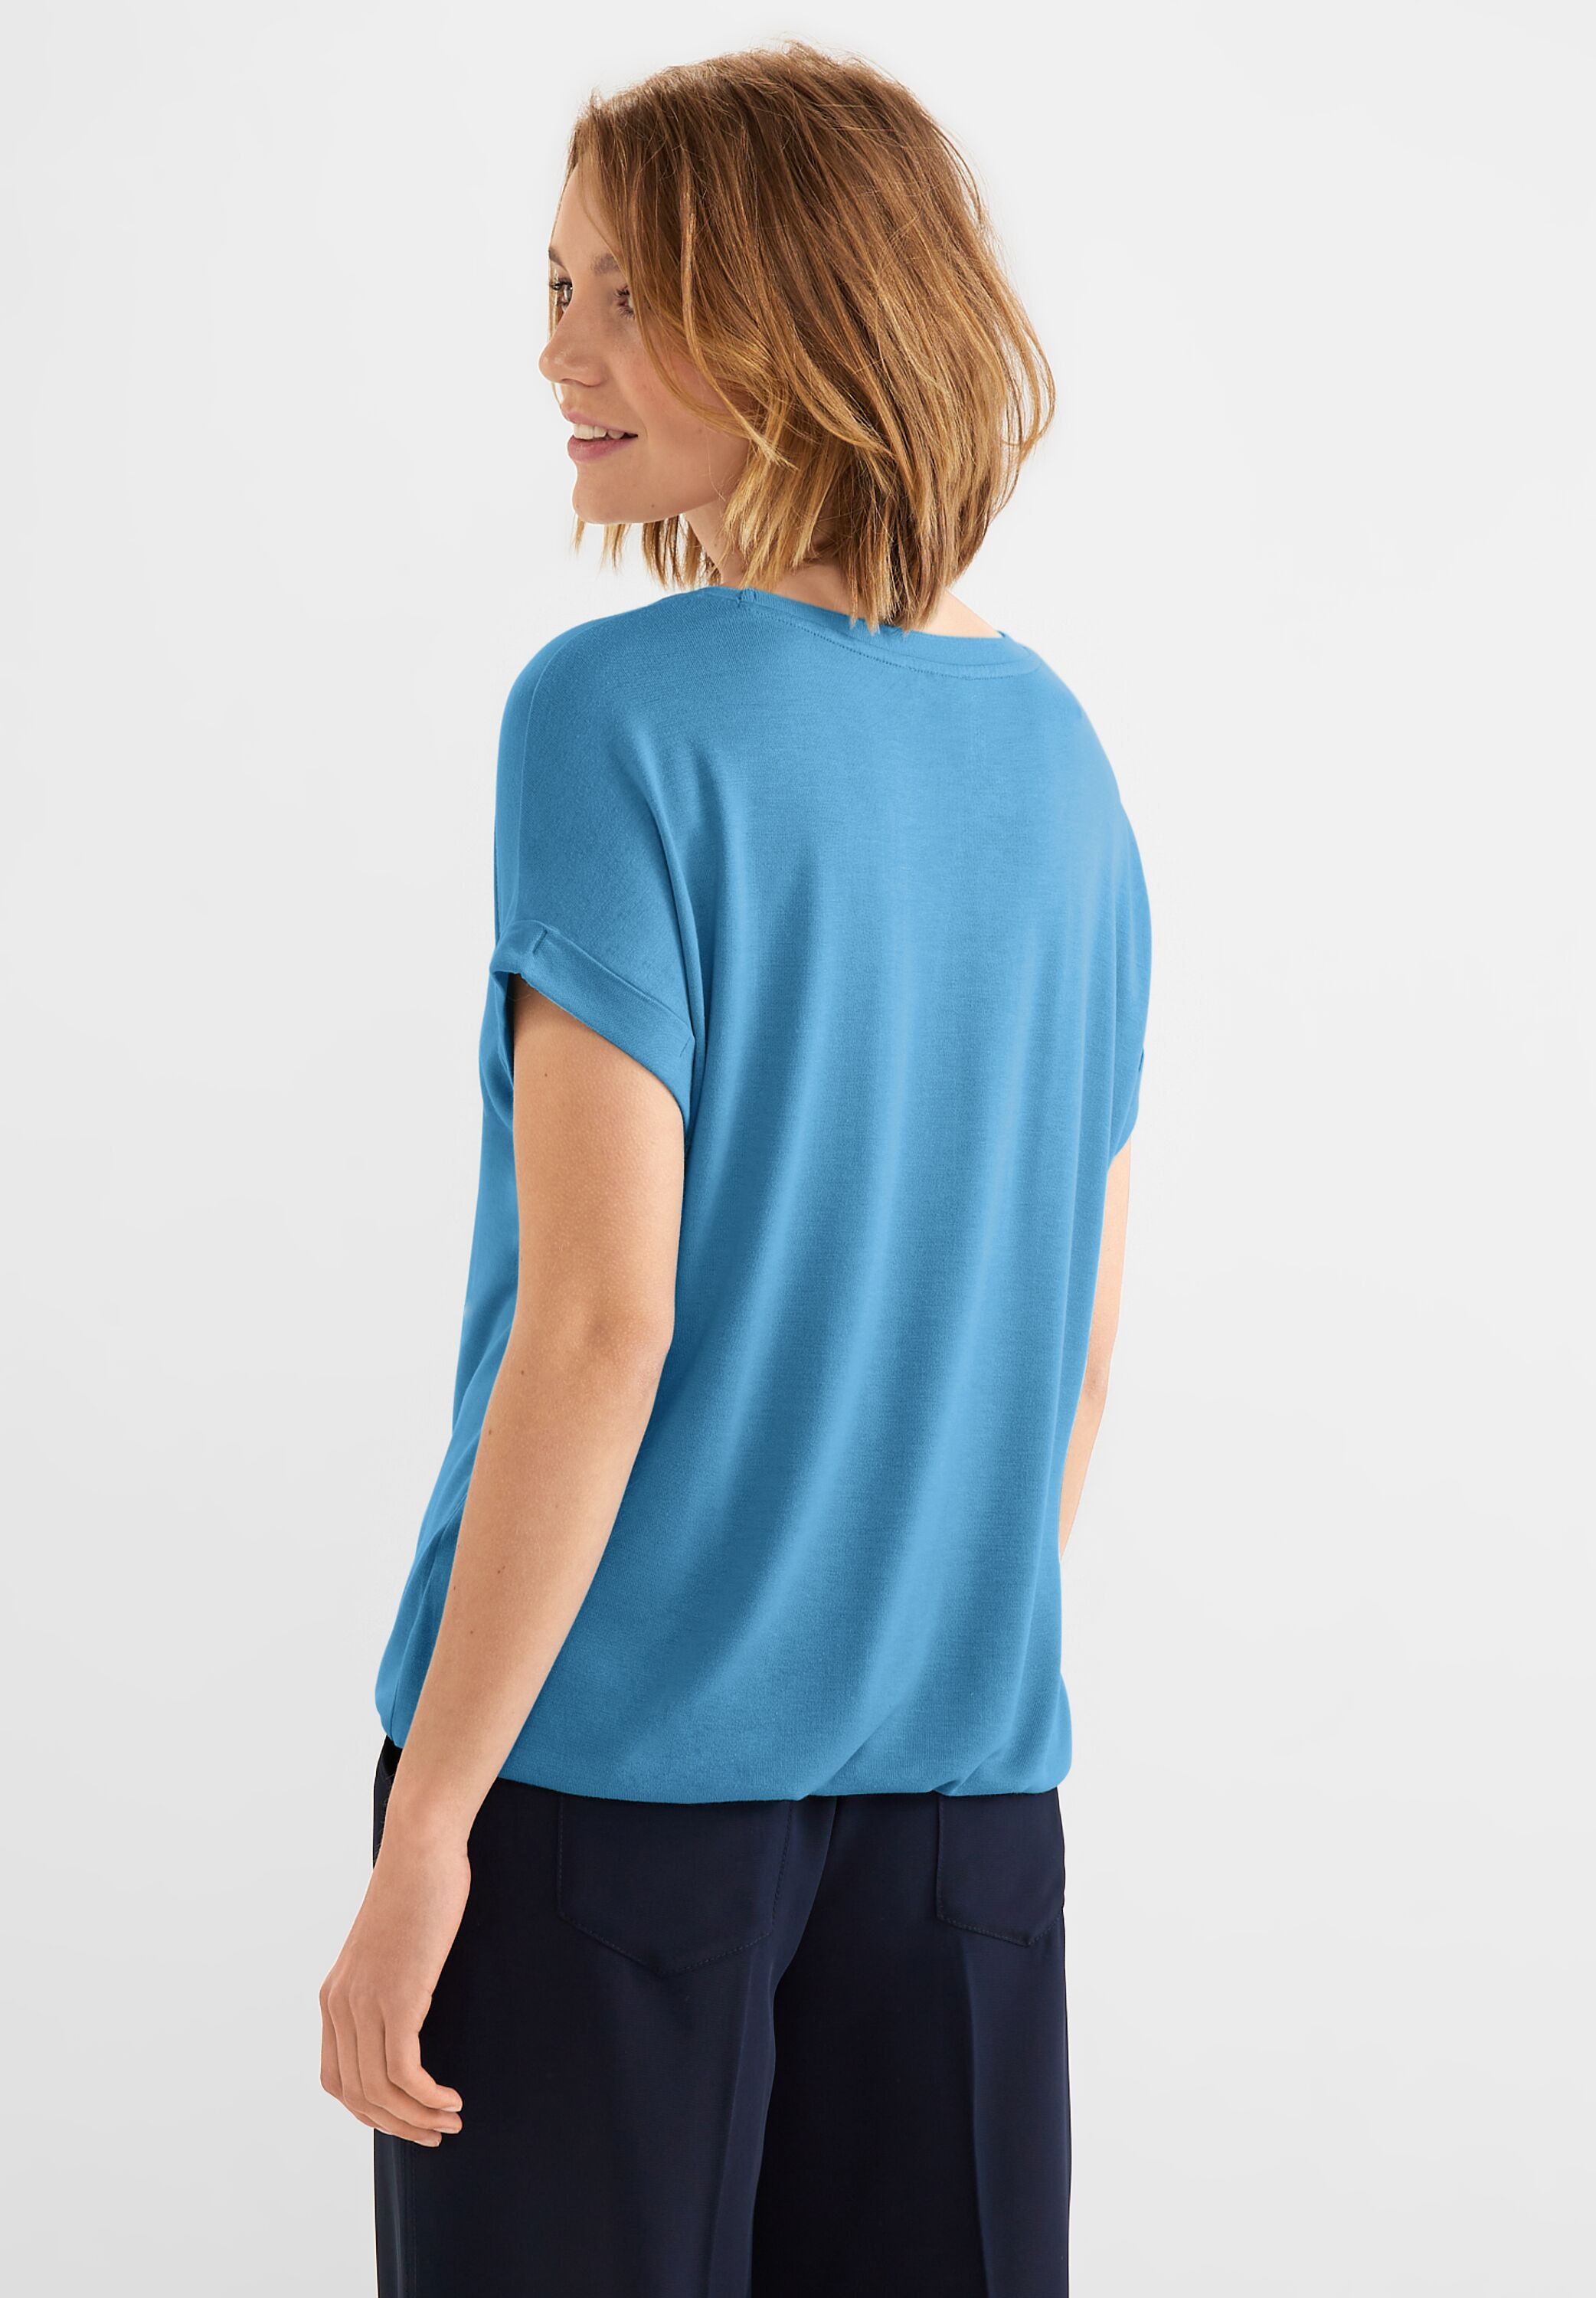 STREET Unifarbe V-Shirt, online in ONE